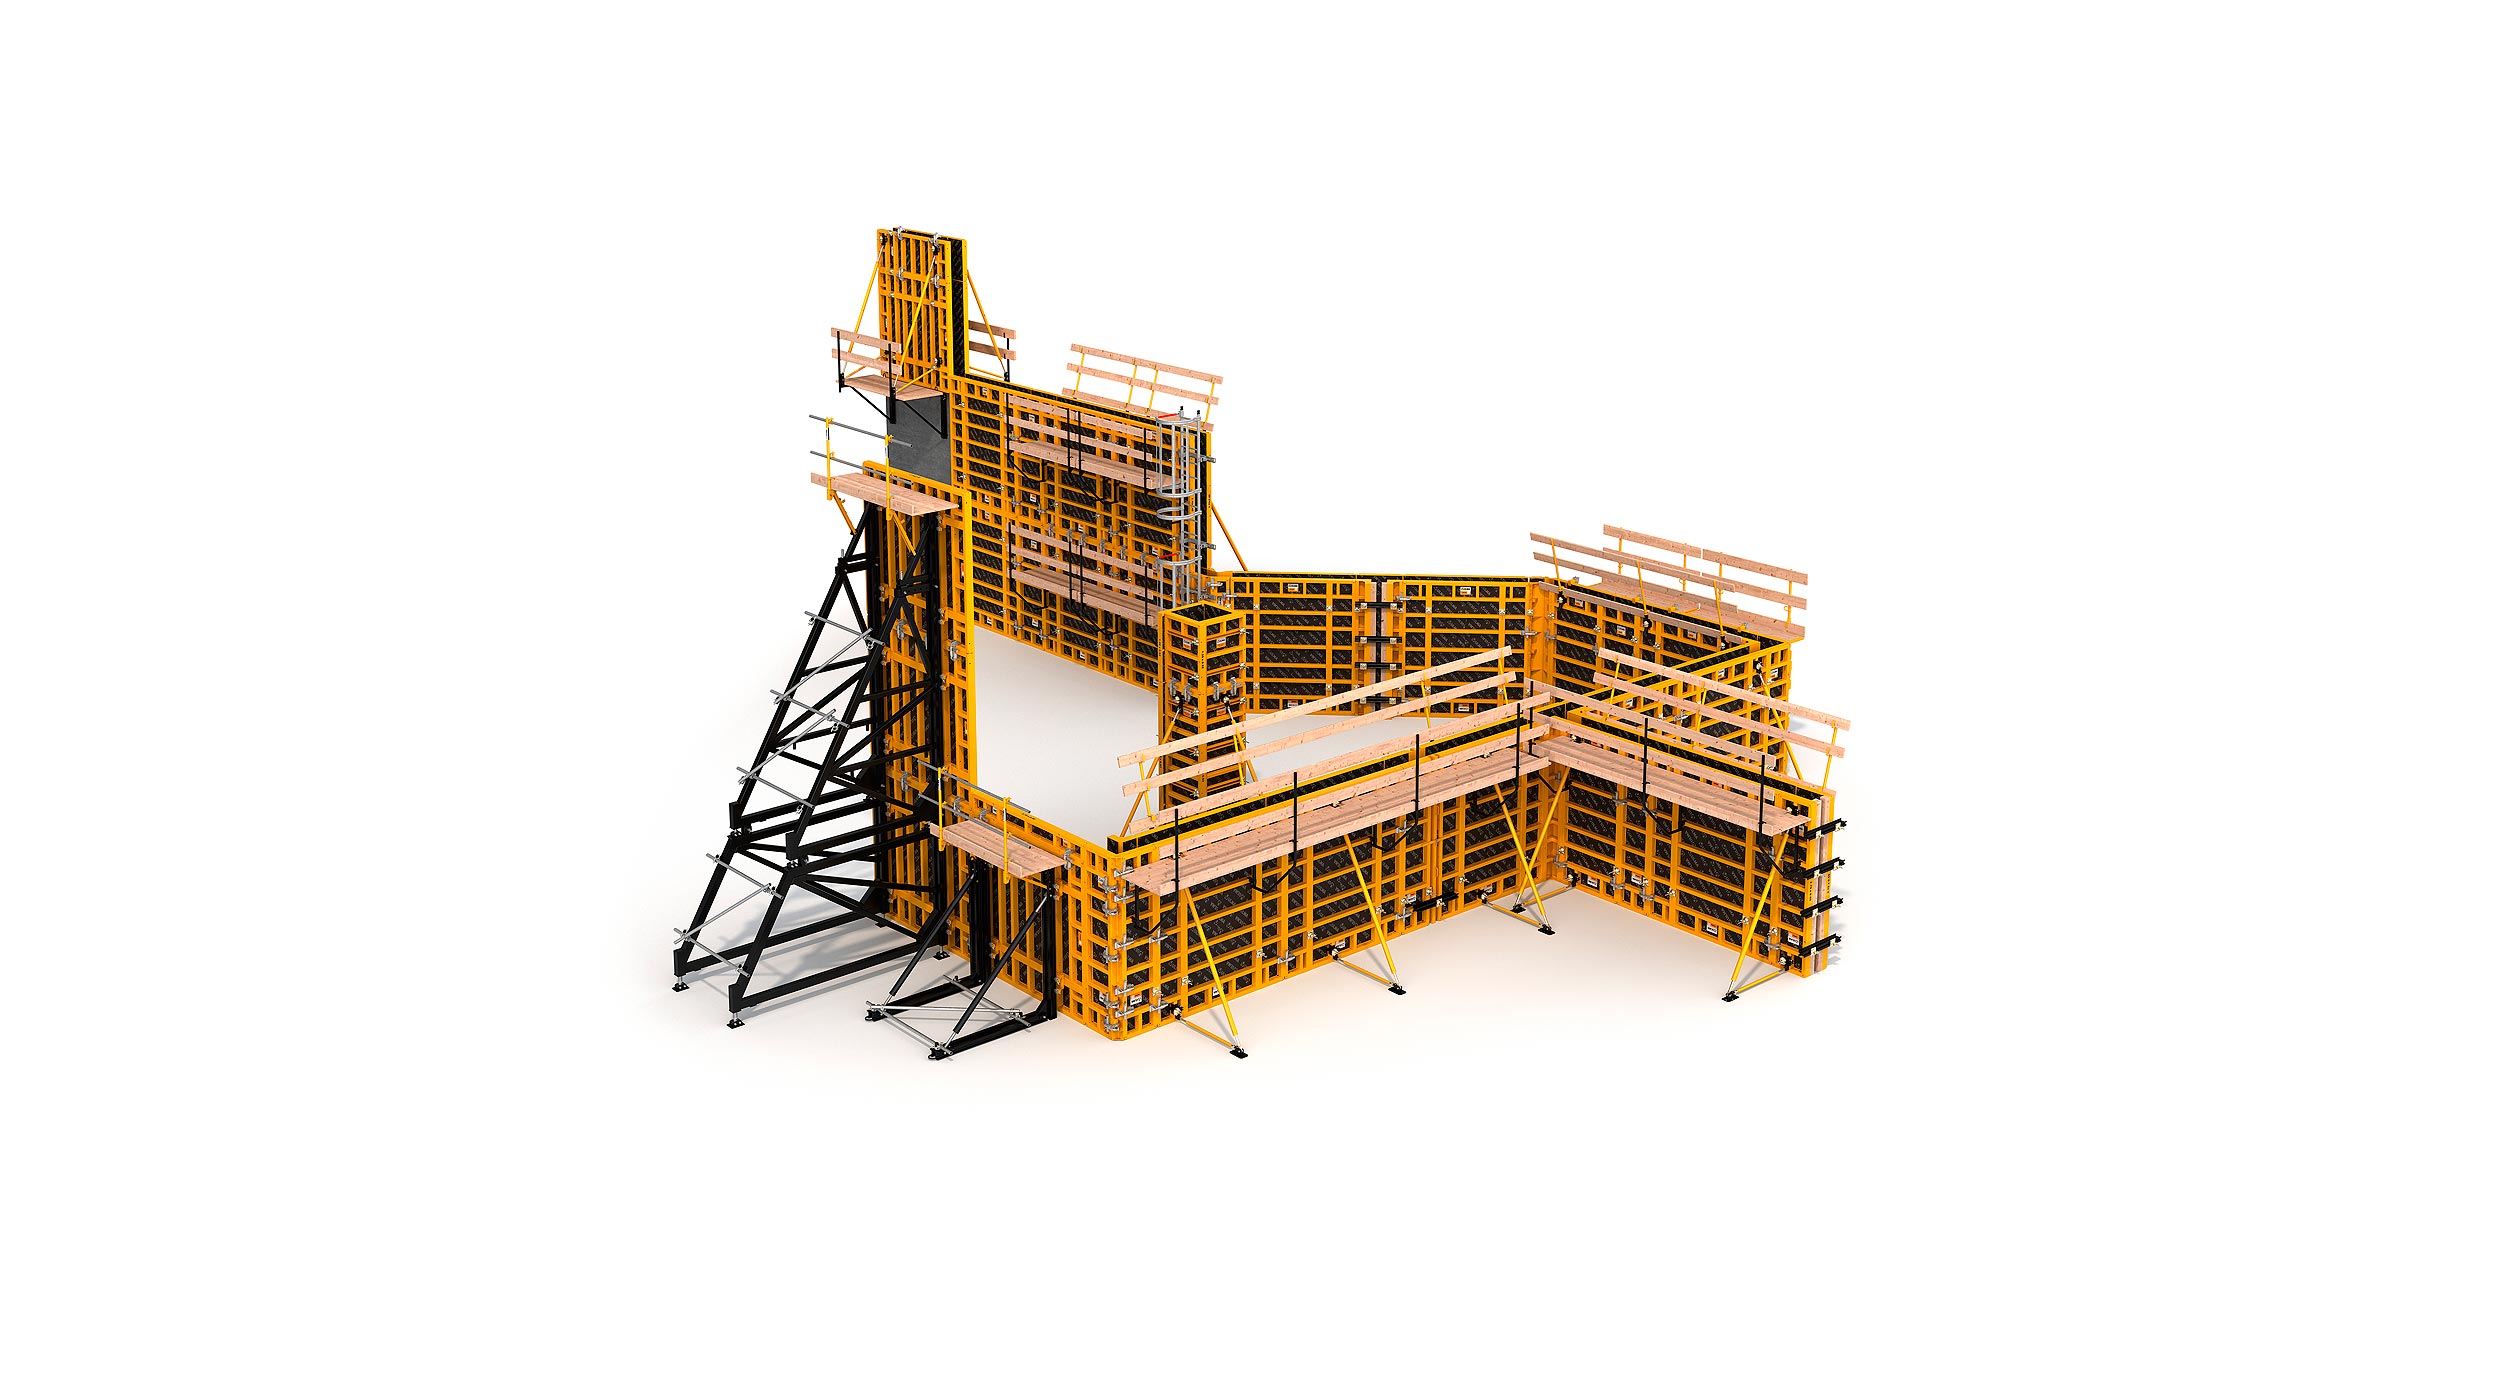 Sistema de encofrado modular para la construcción de todo tipo de estructuras verticales de hormigón. Destaca su alto rendimiento con el  mínimo coste en mano de obra.